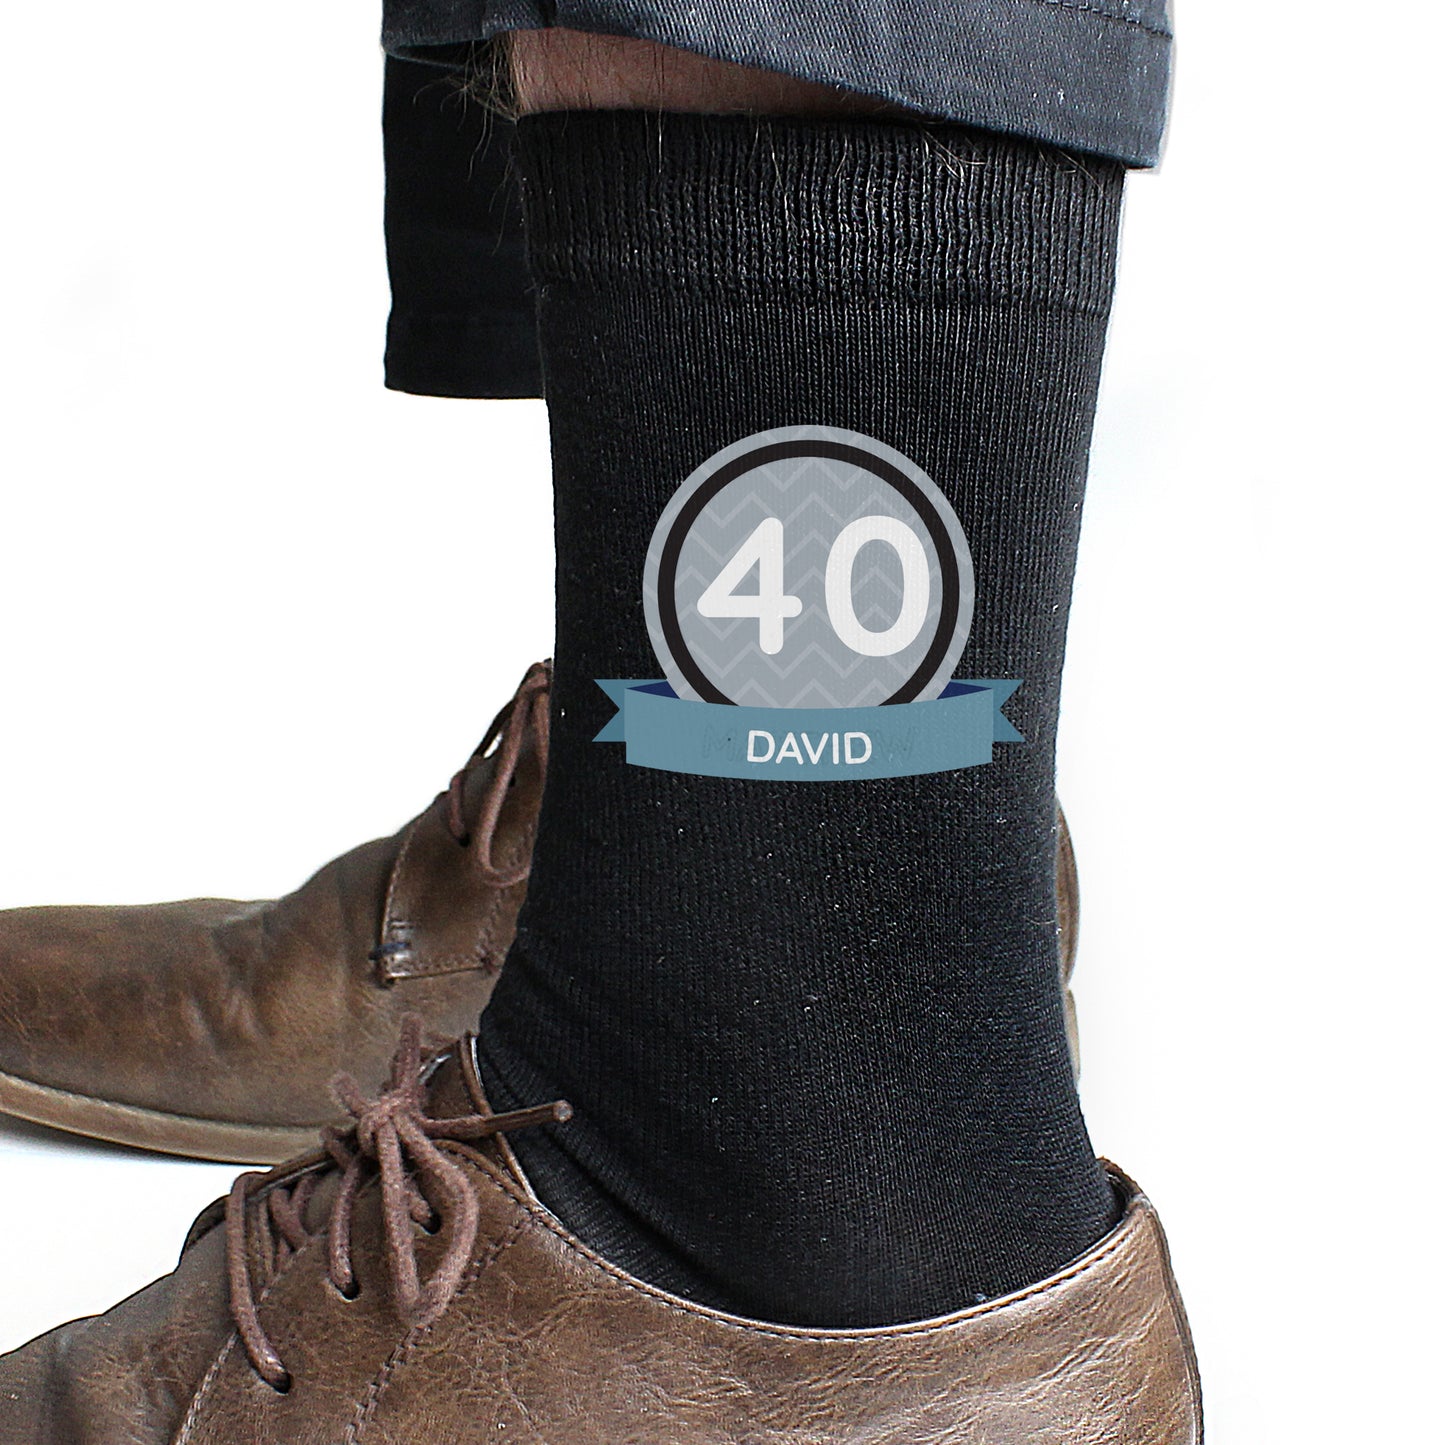 Personalised Birthday Men's Socks - Personalise It!